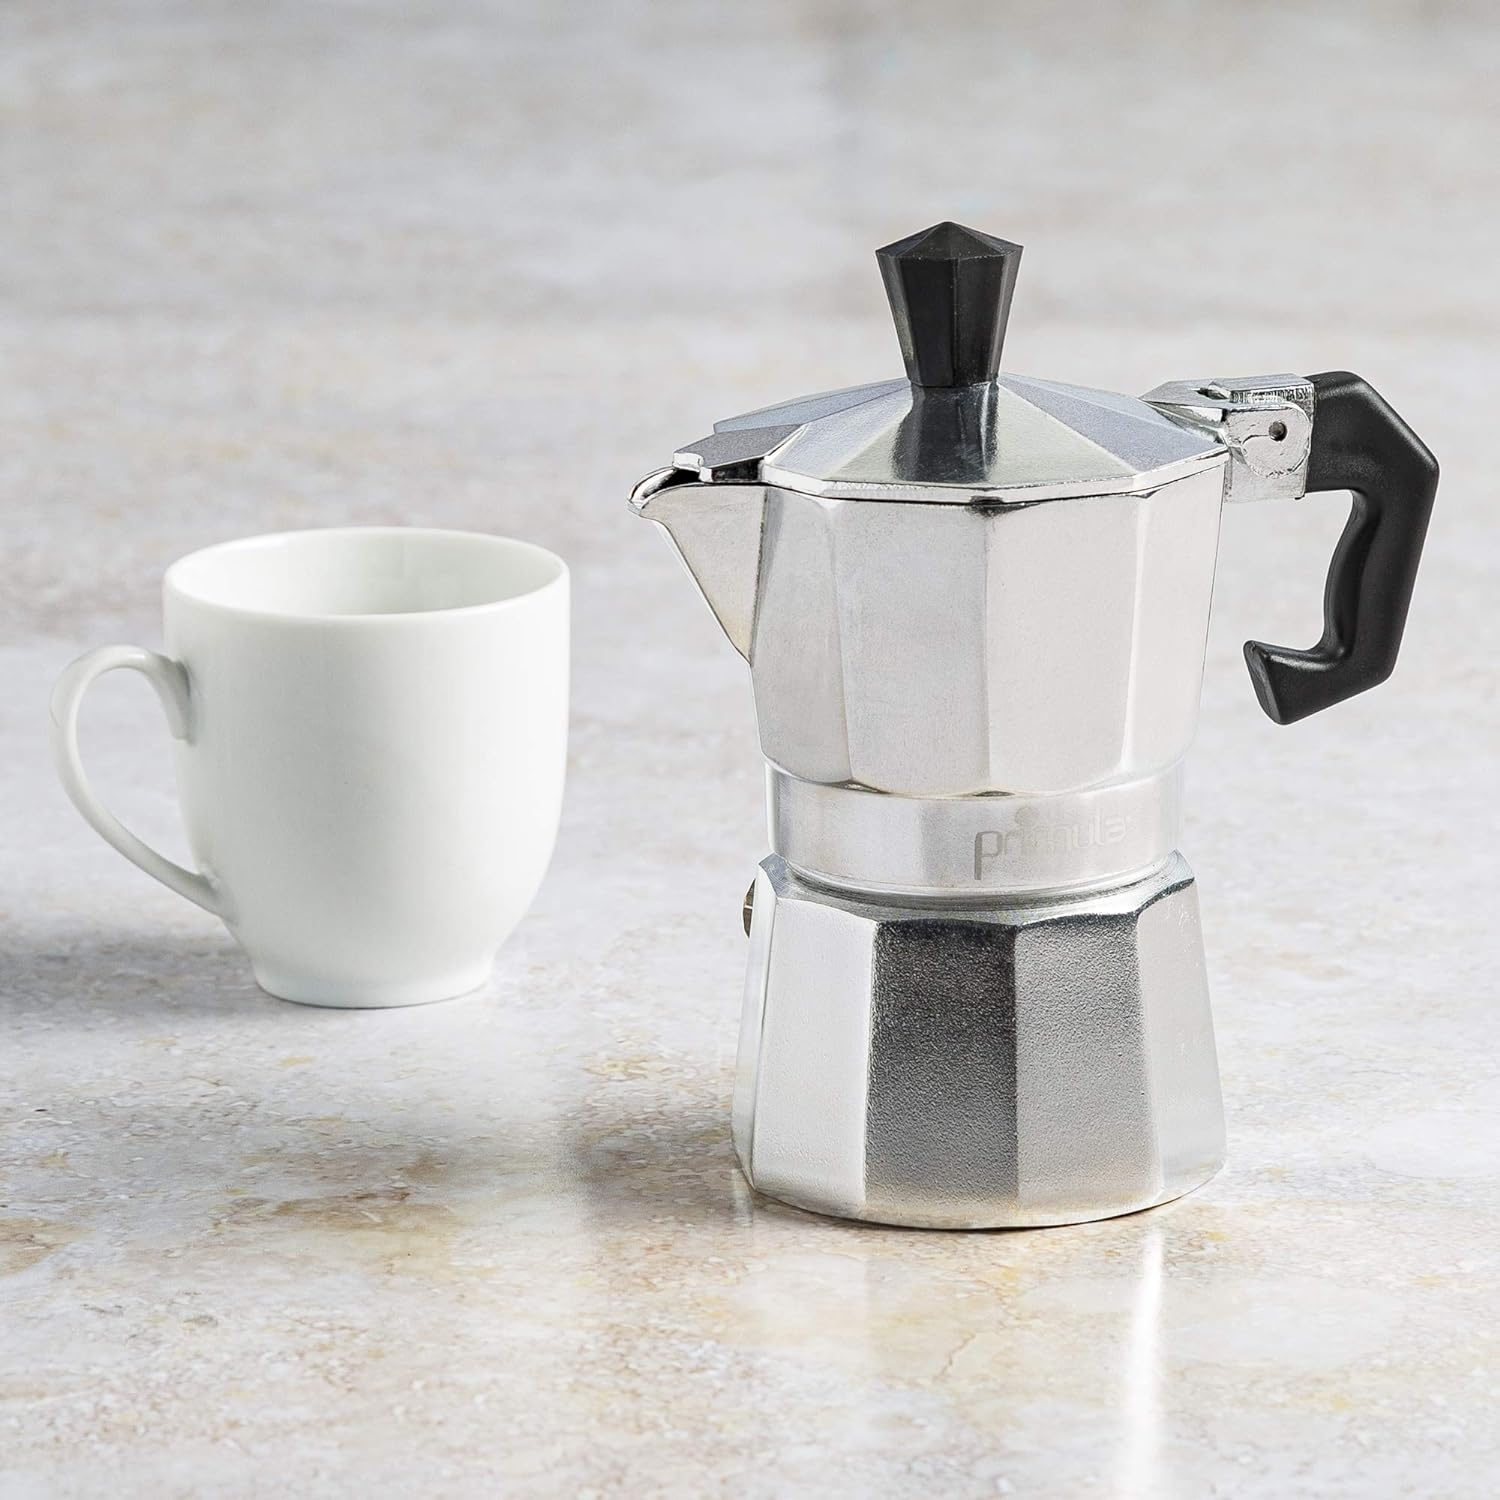 Primula Aluminum Maker Bold, Full Body Espresso – Easy to Use – Makes 1 Cup